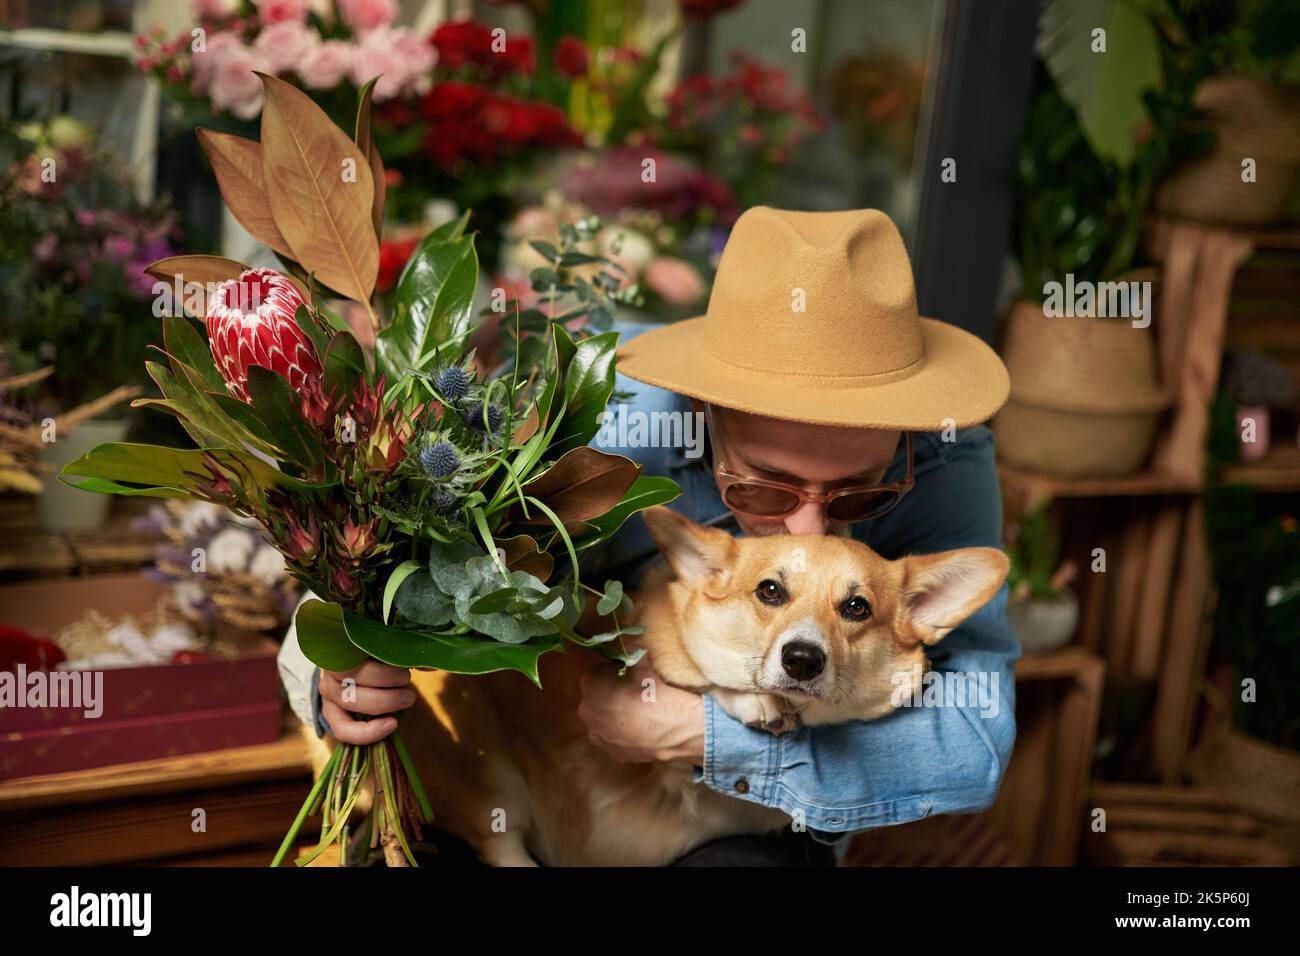 Hippster uomo in occhiali da sole e cappello con bouquet di fiori freschi di primavera baciare il cane corgi gallese. Giorno della mamma, giorno di San Valentino o Giornata internazionale della donna. Immagini di alta qualità Foto Stock